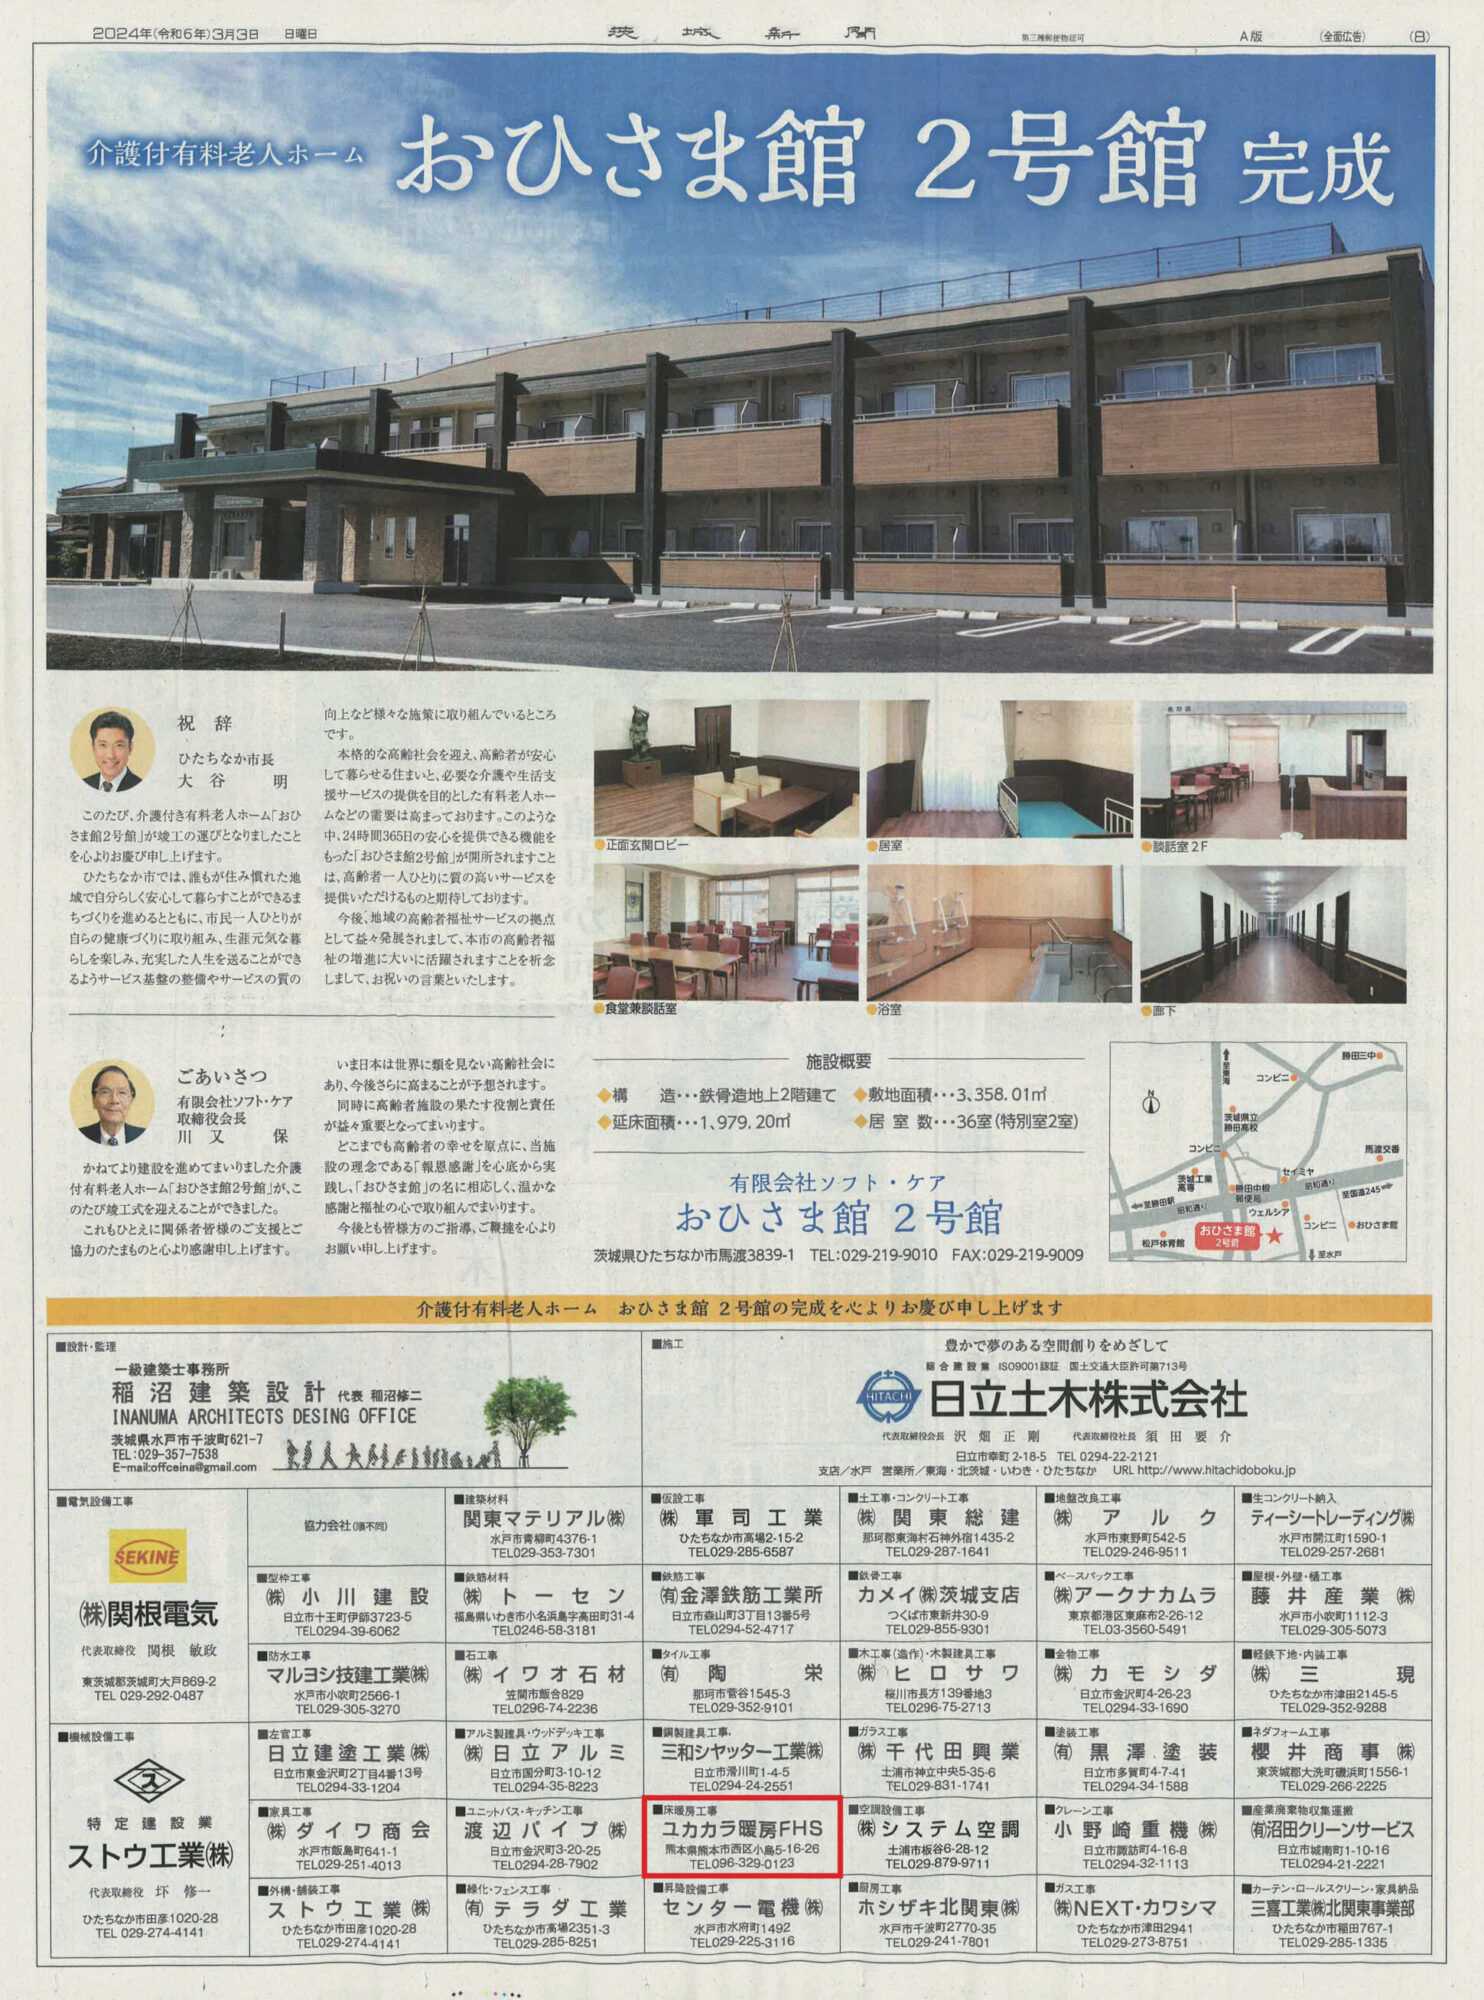 茨城県ひたちなか市の「おひさま館2号館」にFHSのユカカラ暖房を導入いただきました。